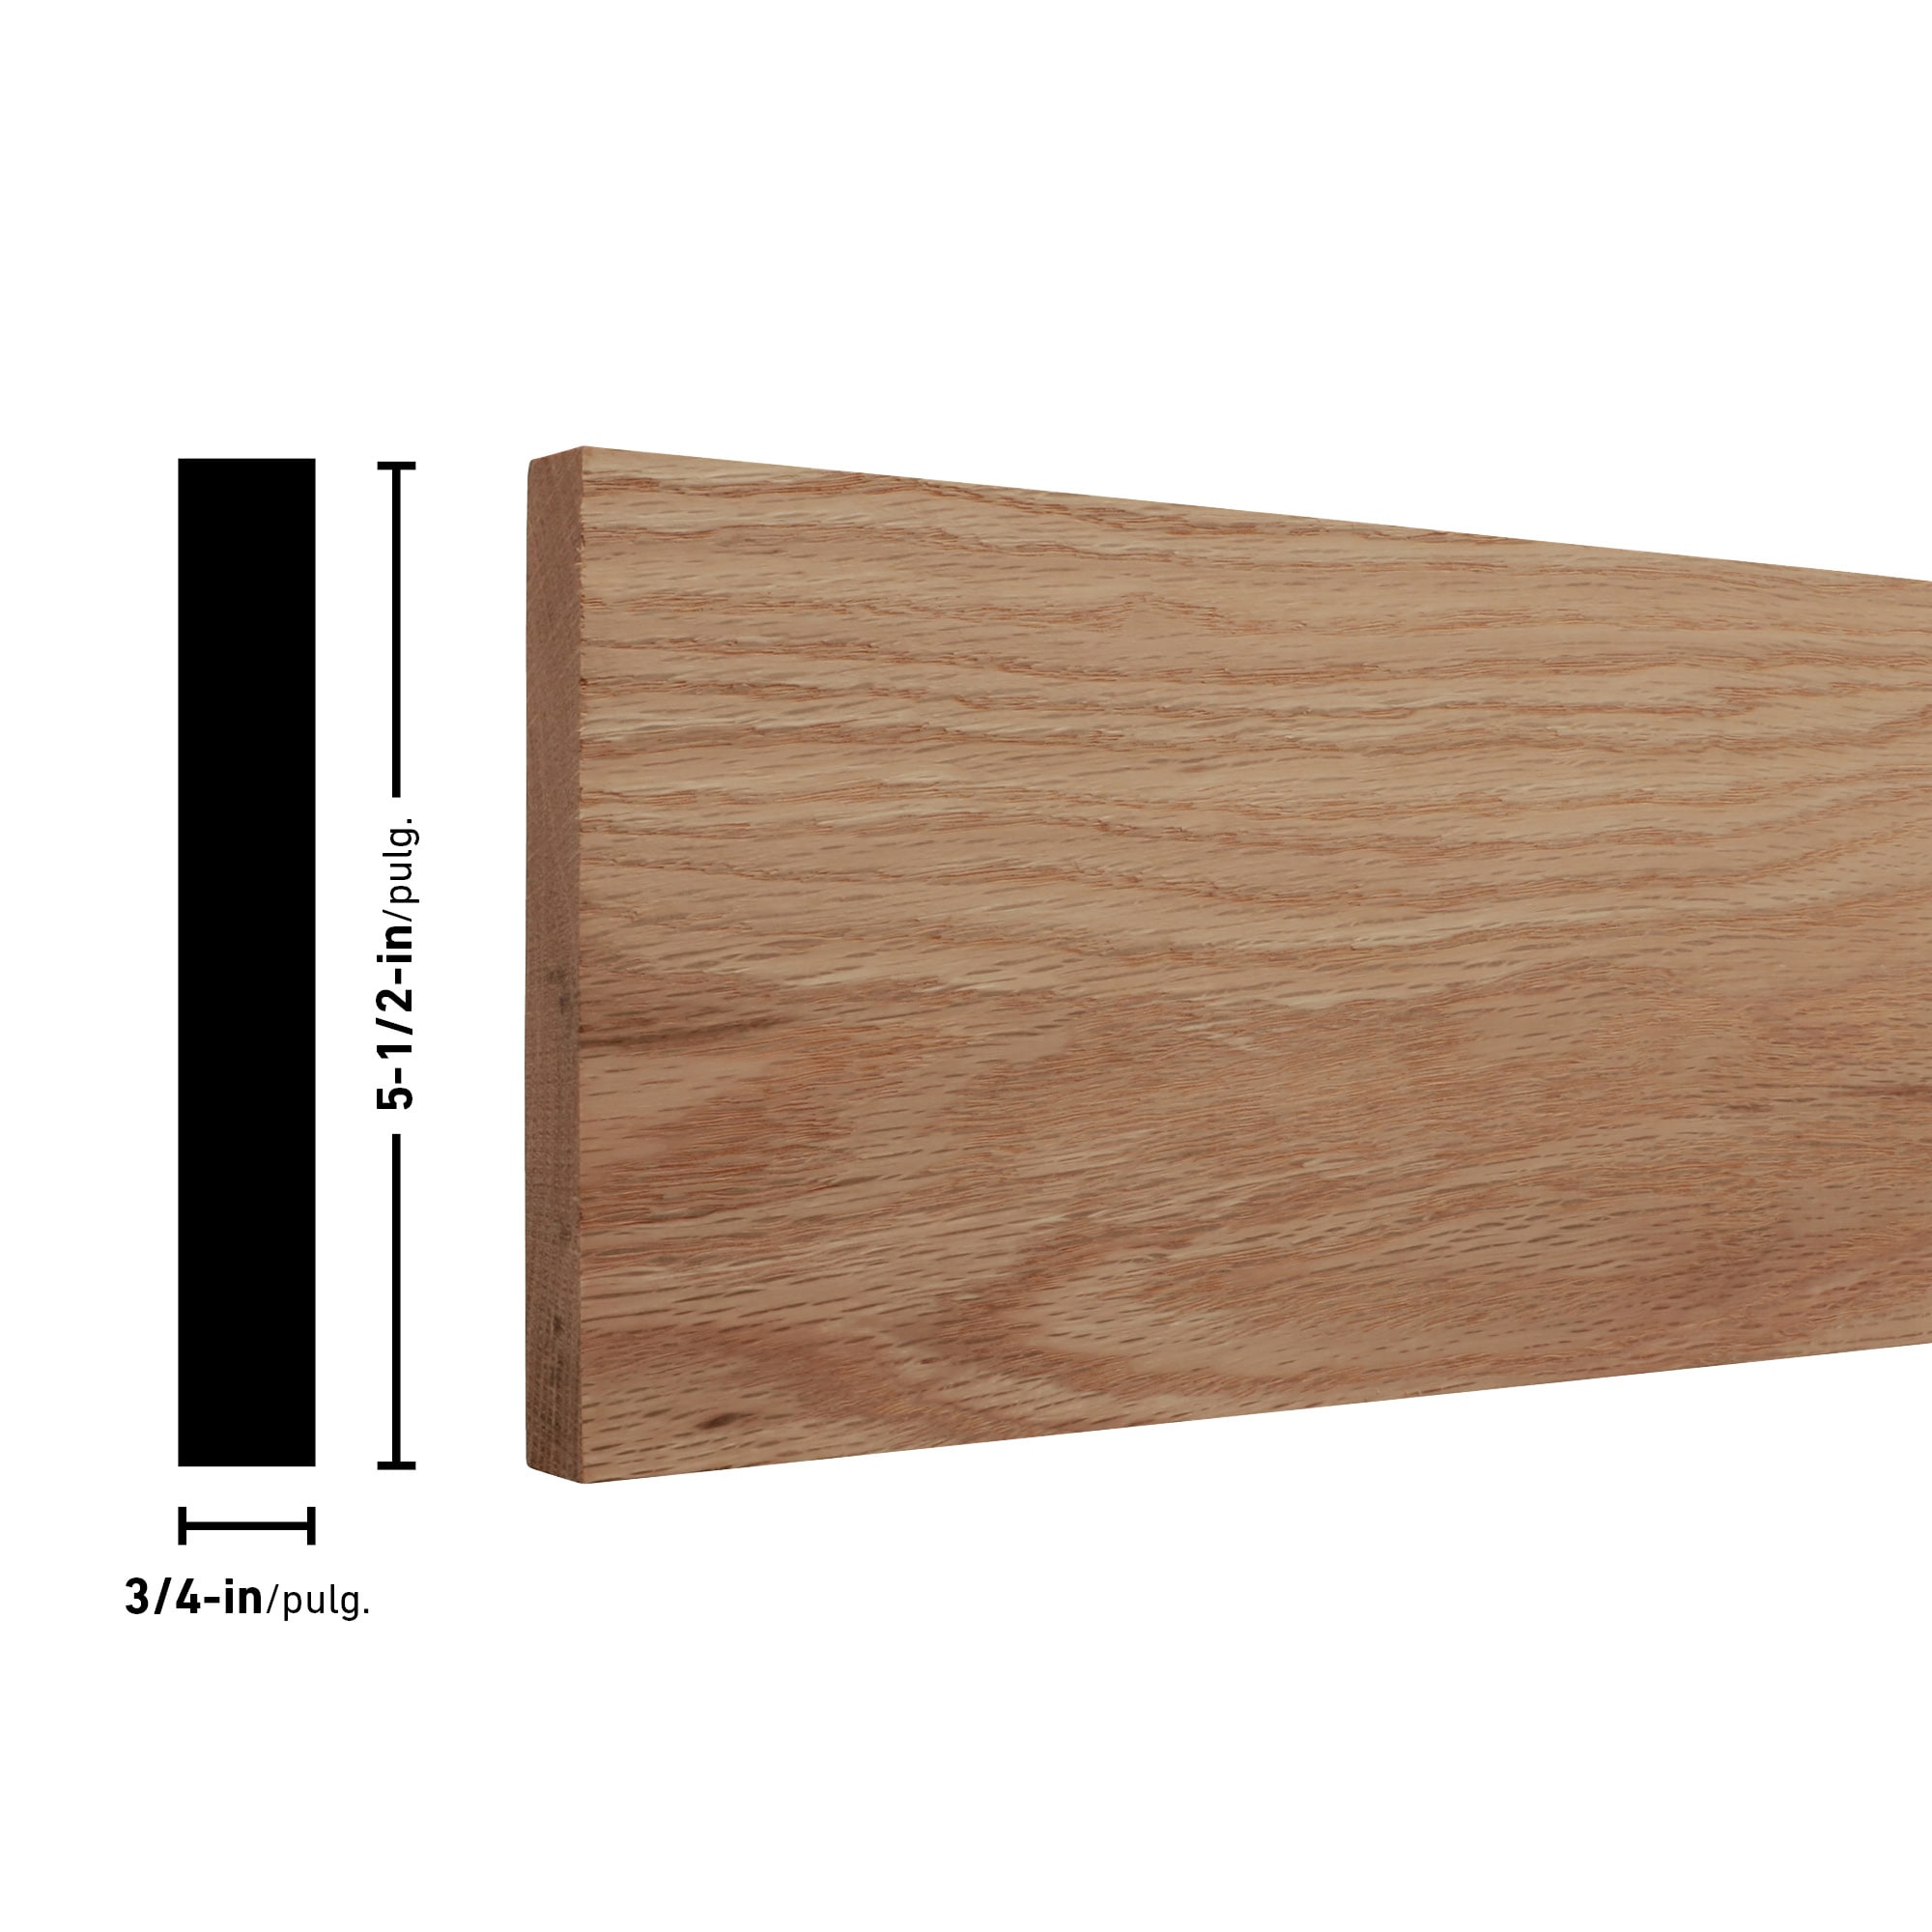 Swaner Hardwood 2 in. x 6 in. x 8 ft. Red Oak S4S Board